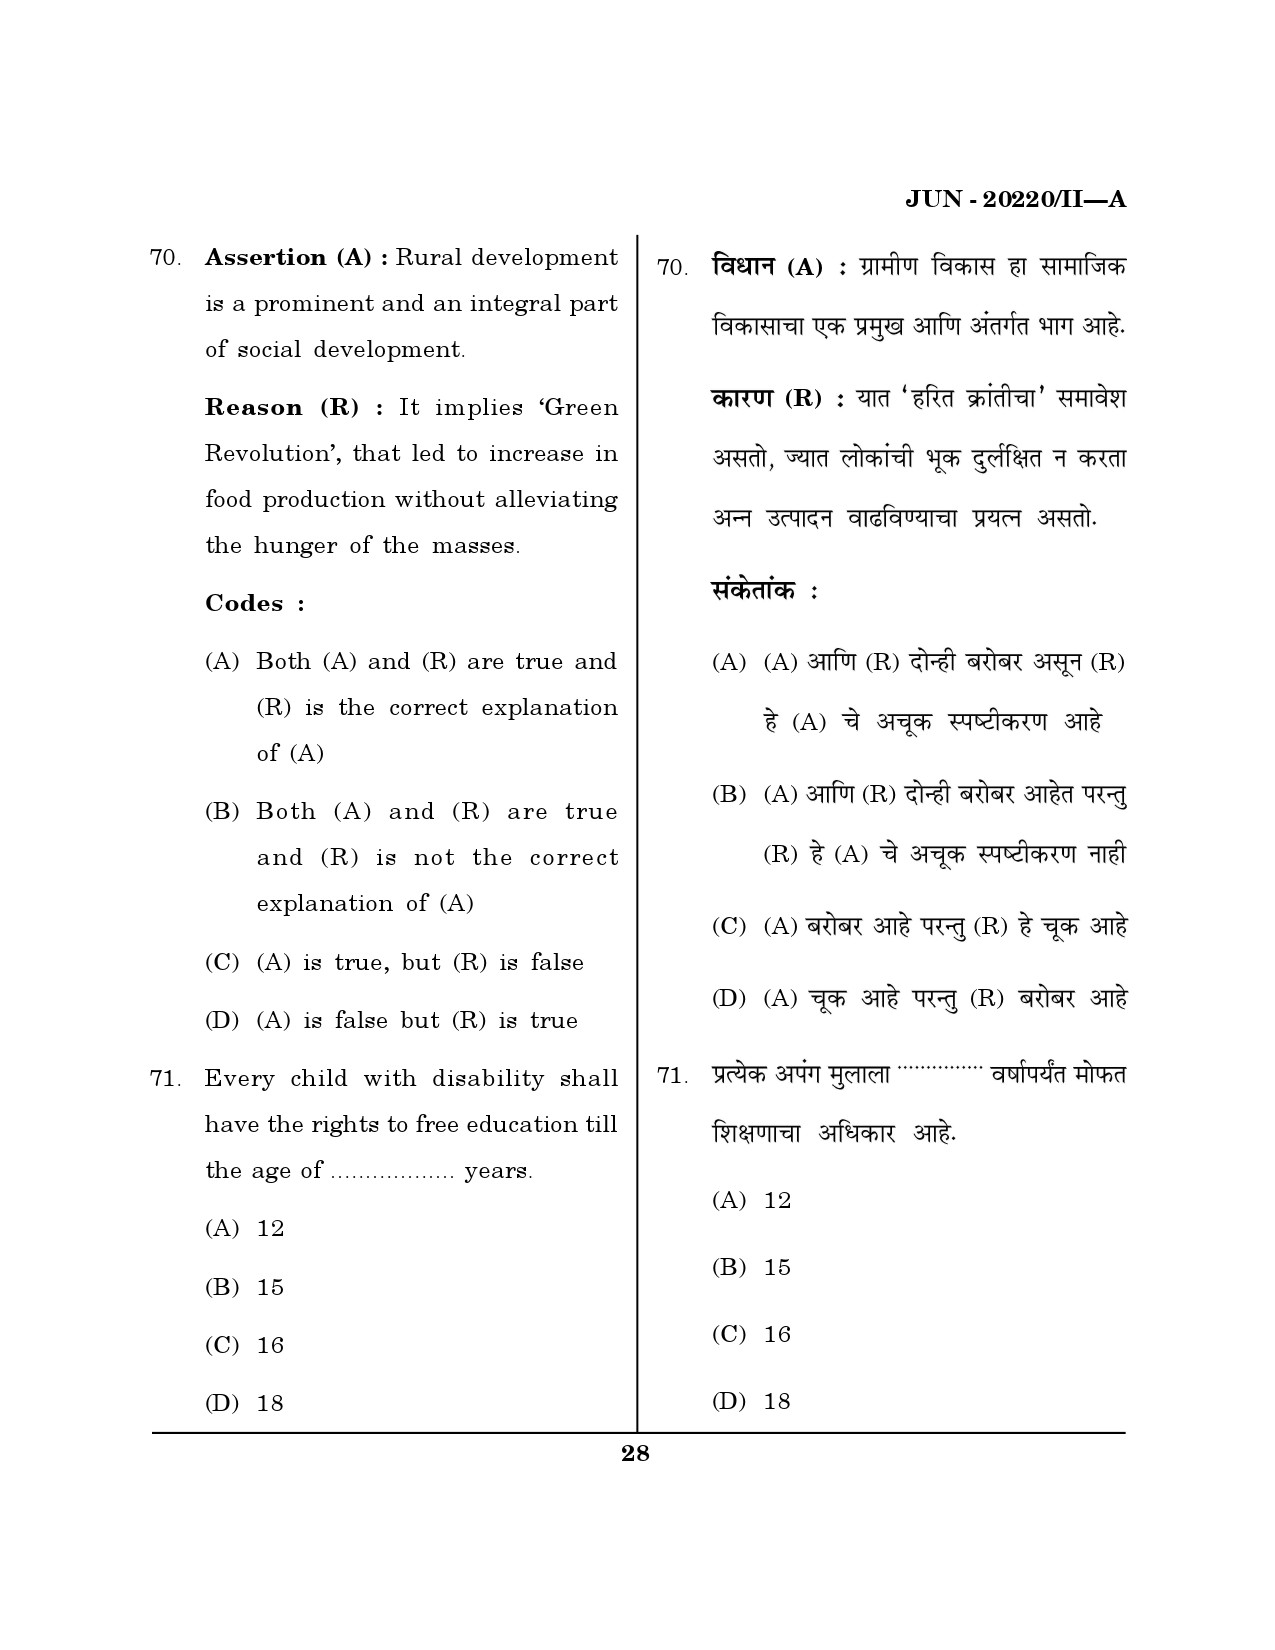 Maharashtra SET Social Work Question Paper II June 2020 27